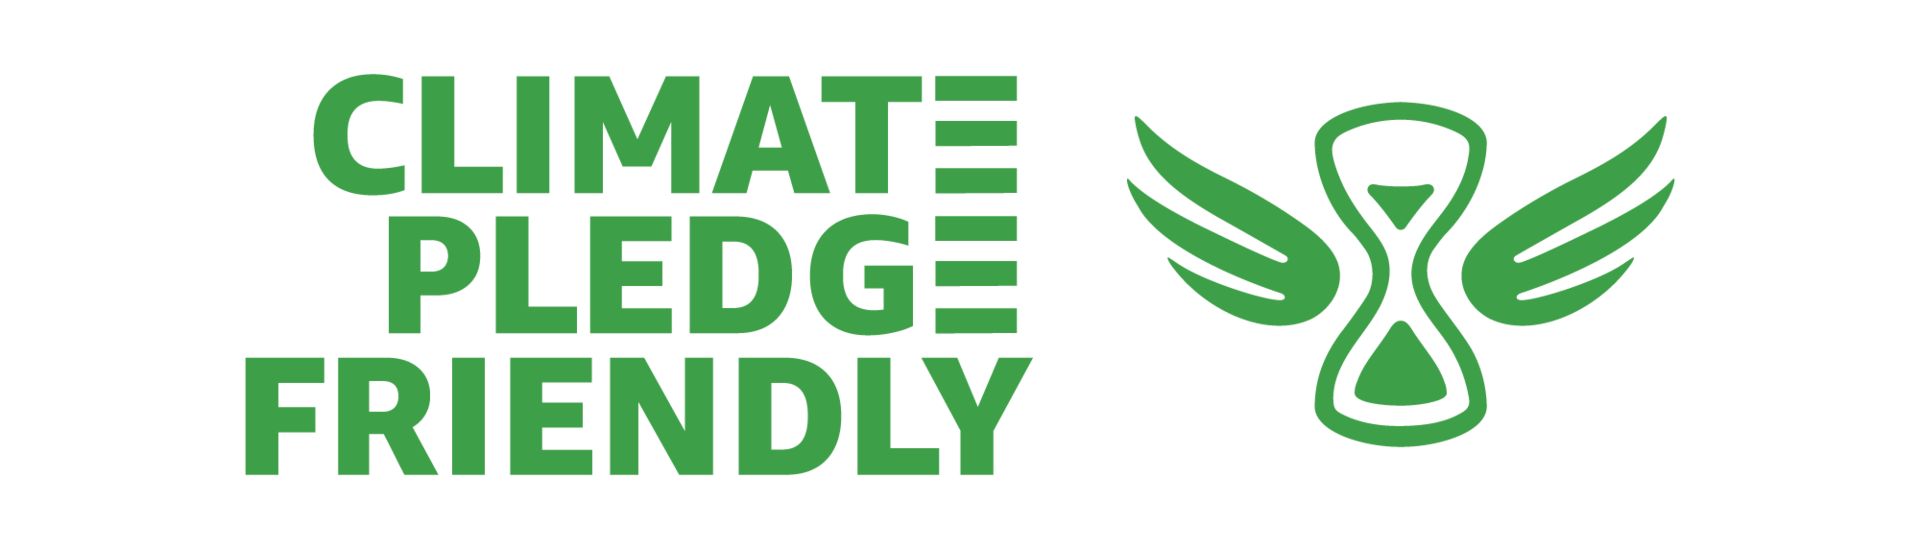 climate-pledge-friendly.png__PID:fa28534f-06dc-45f1-b620-286348766051